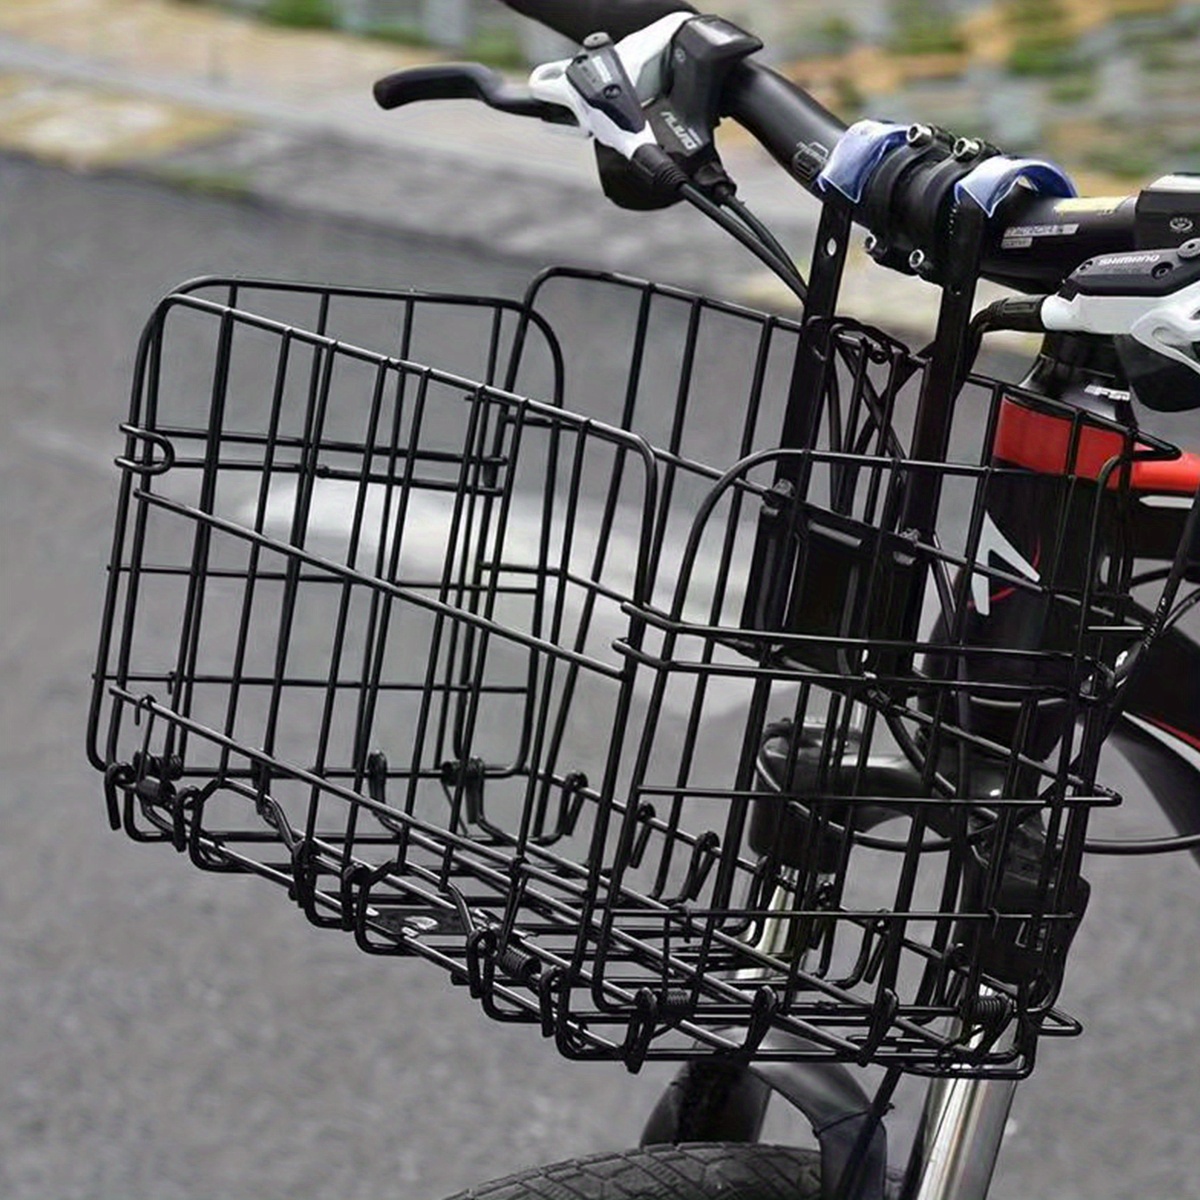 

Versatile Folding Bike Basket – Easy-mount Handlebar Wire Mesh Bag For Front/rear, Secure Transport & Storage